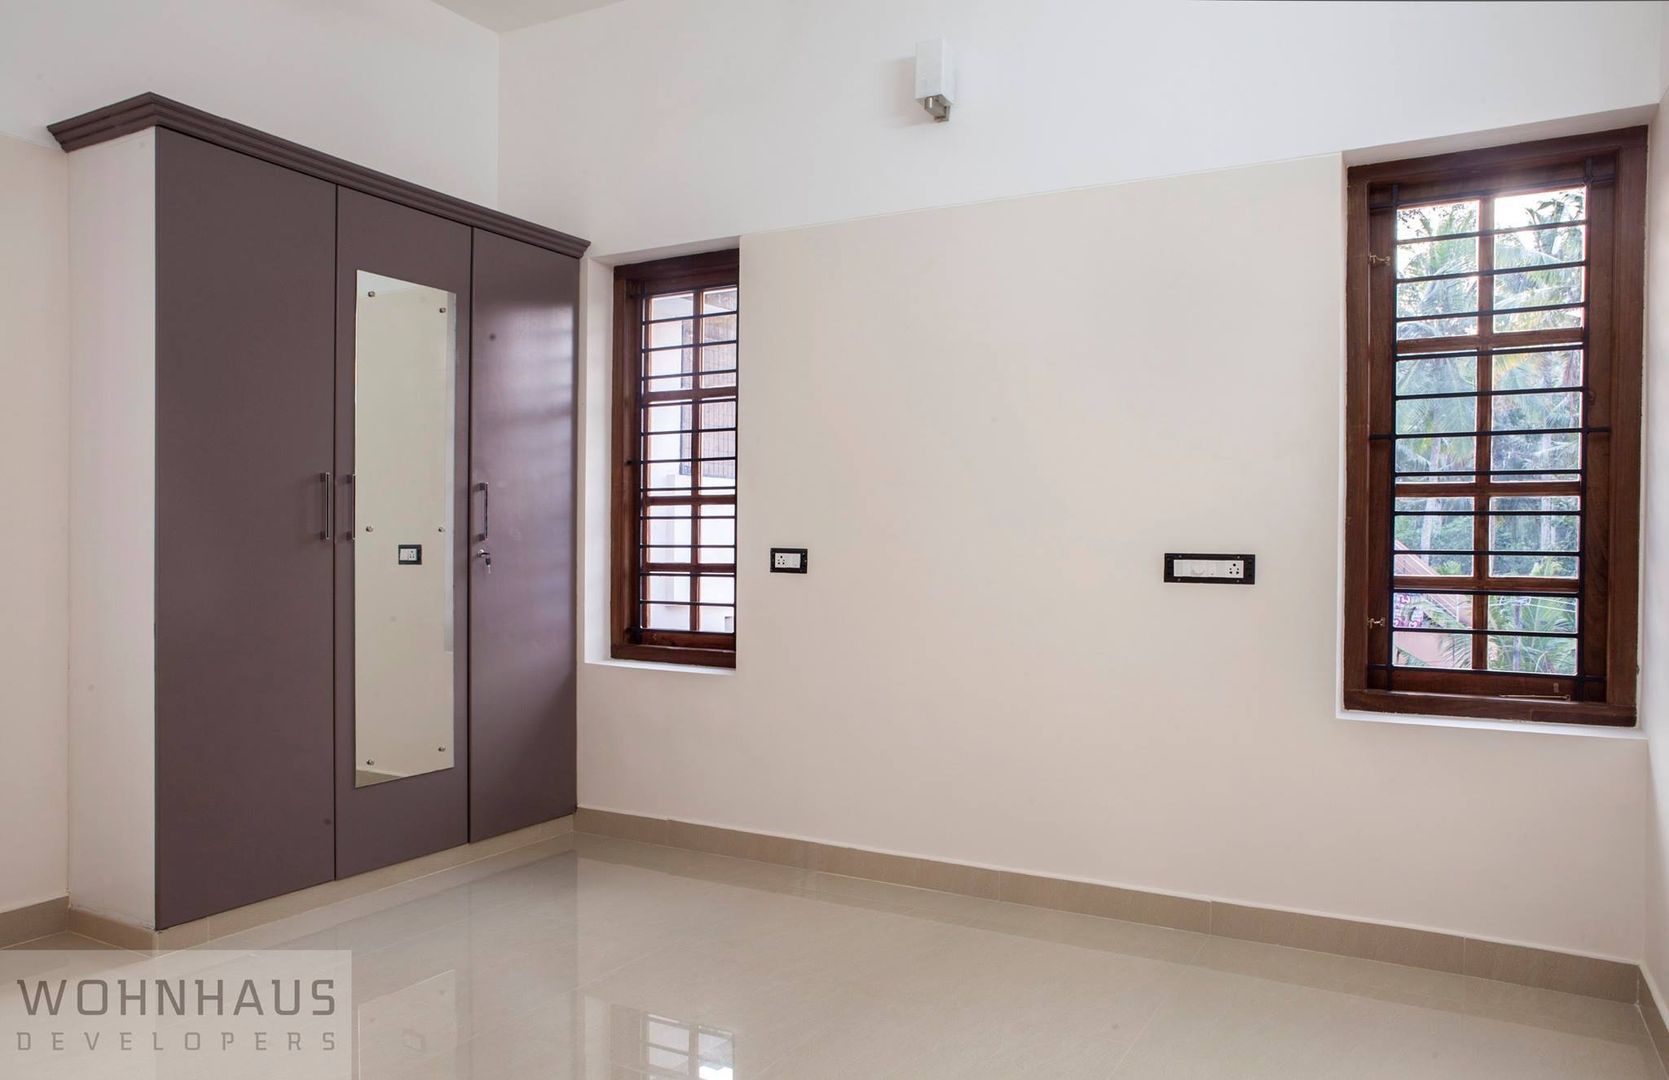 1400sqft House in Trivandrum, Wohnhaus Developers Wohnhaus Developers モダンスタイルの寝室 セラミック